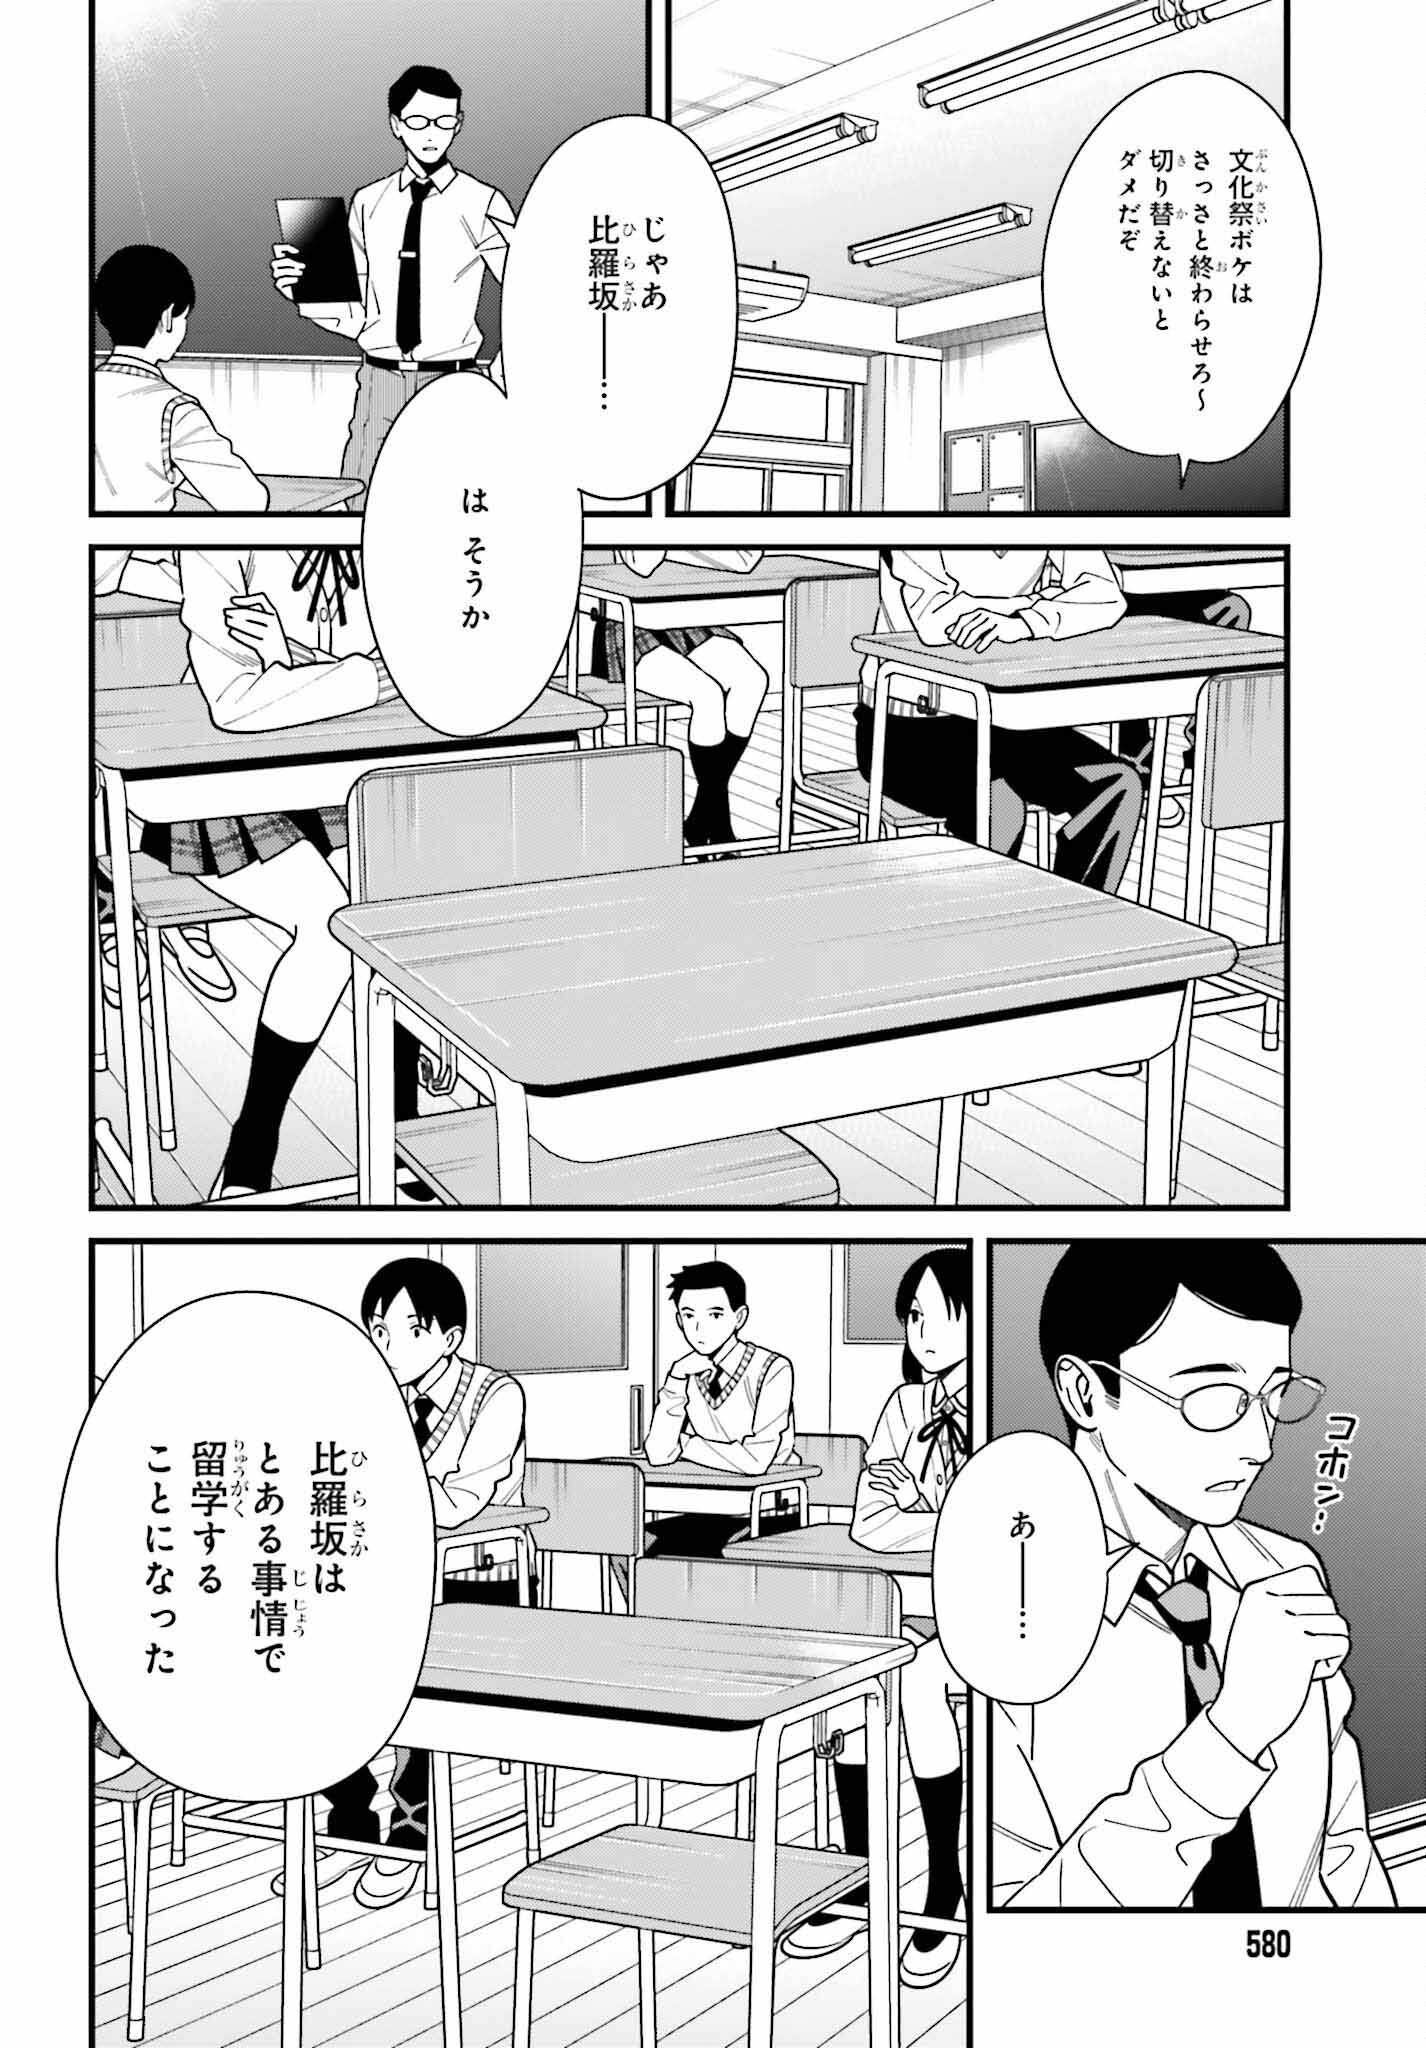 Hirasaka Hinako ga Ero Kawaii koto wo Ore dake ga Shitte iru - Chapter 43 - Page 18